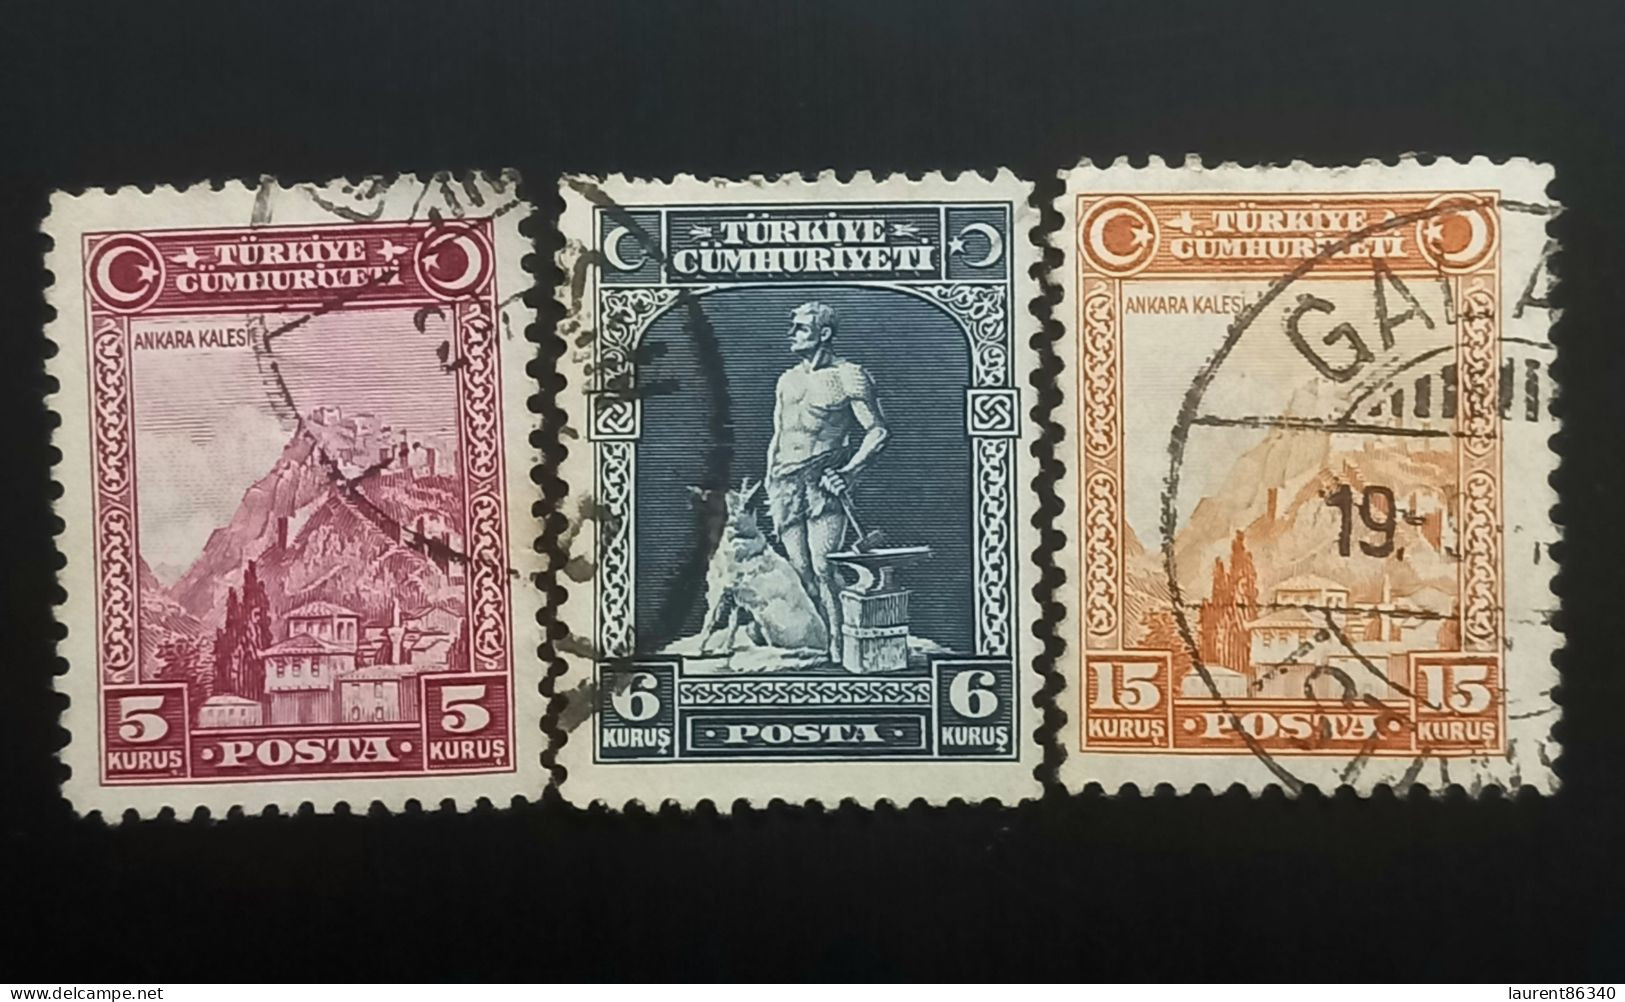 TURQUIE 1930 Inscription "TÜRKIYE CÜMHURIYETI" - "Ü" In "CÜMHURIYETI" 3 Used Stamps - Usati